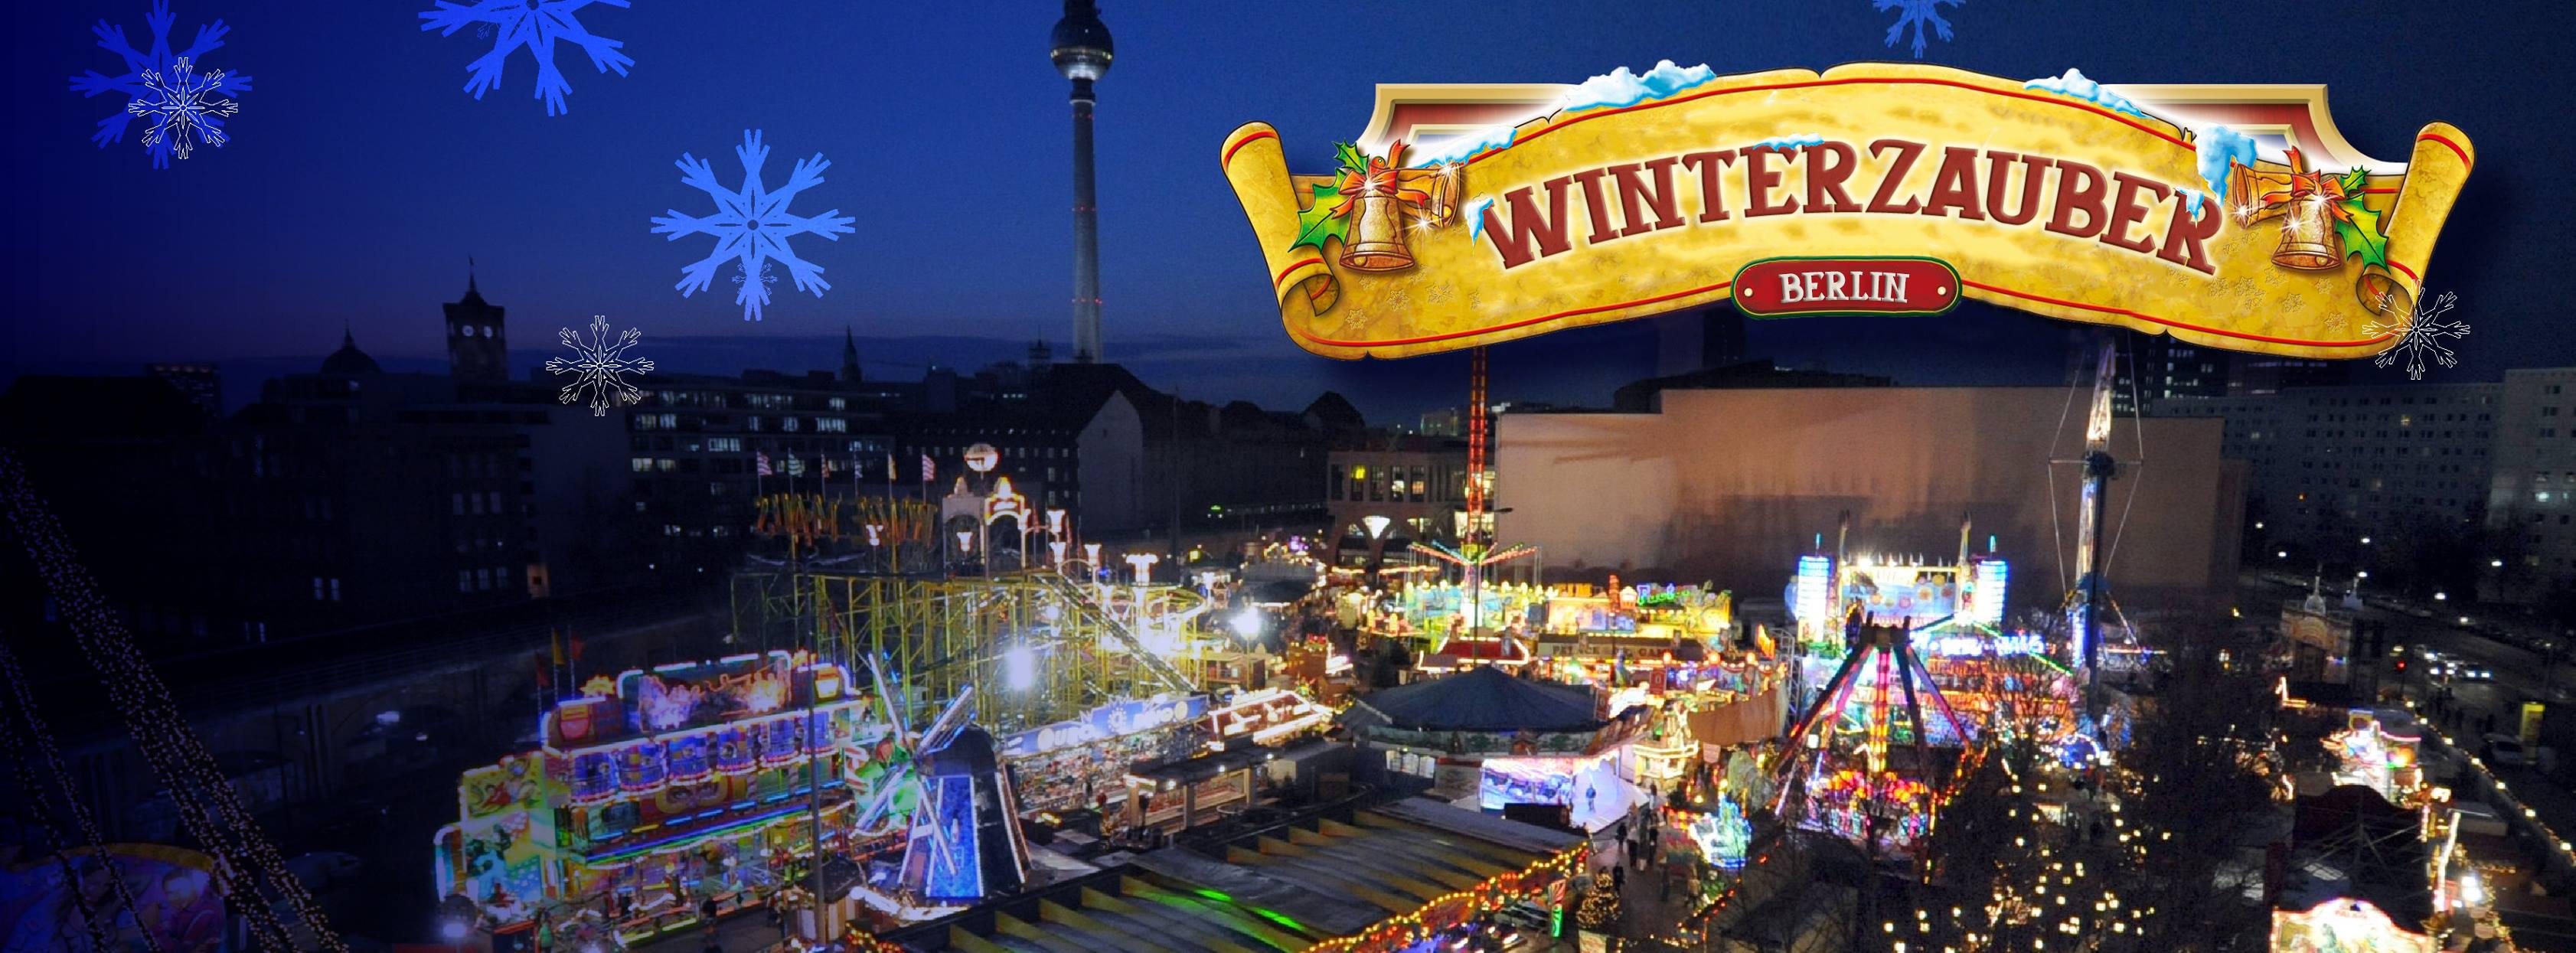 „Winterzauber Berlin“ an der Landsberger Allee eröffnet die bundesweite Weihnachtsmarkt-Saison